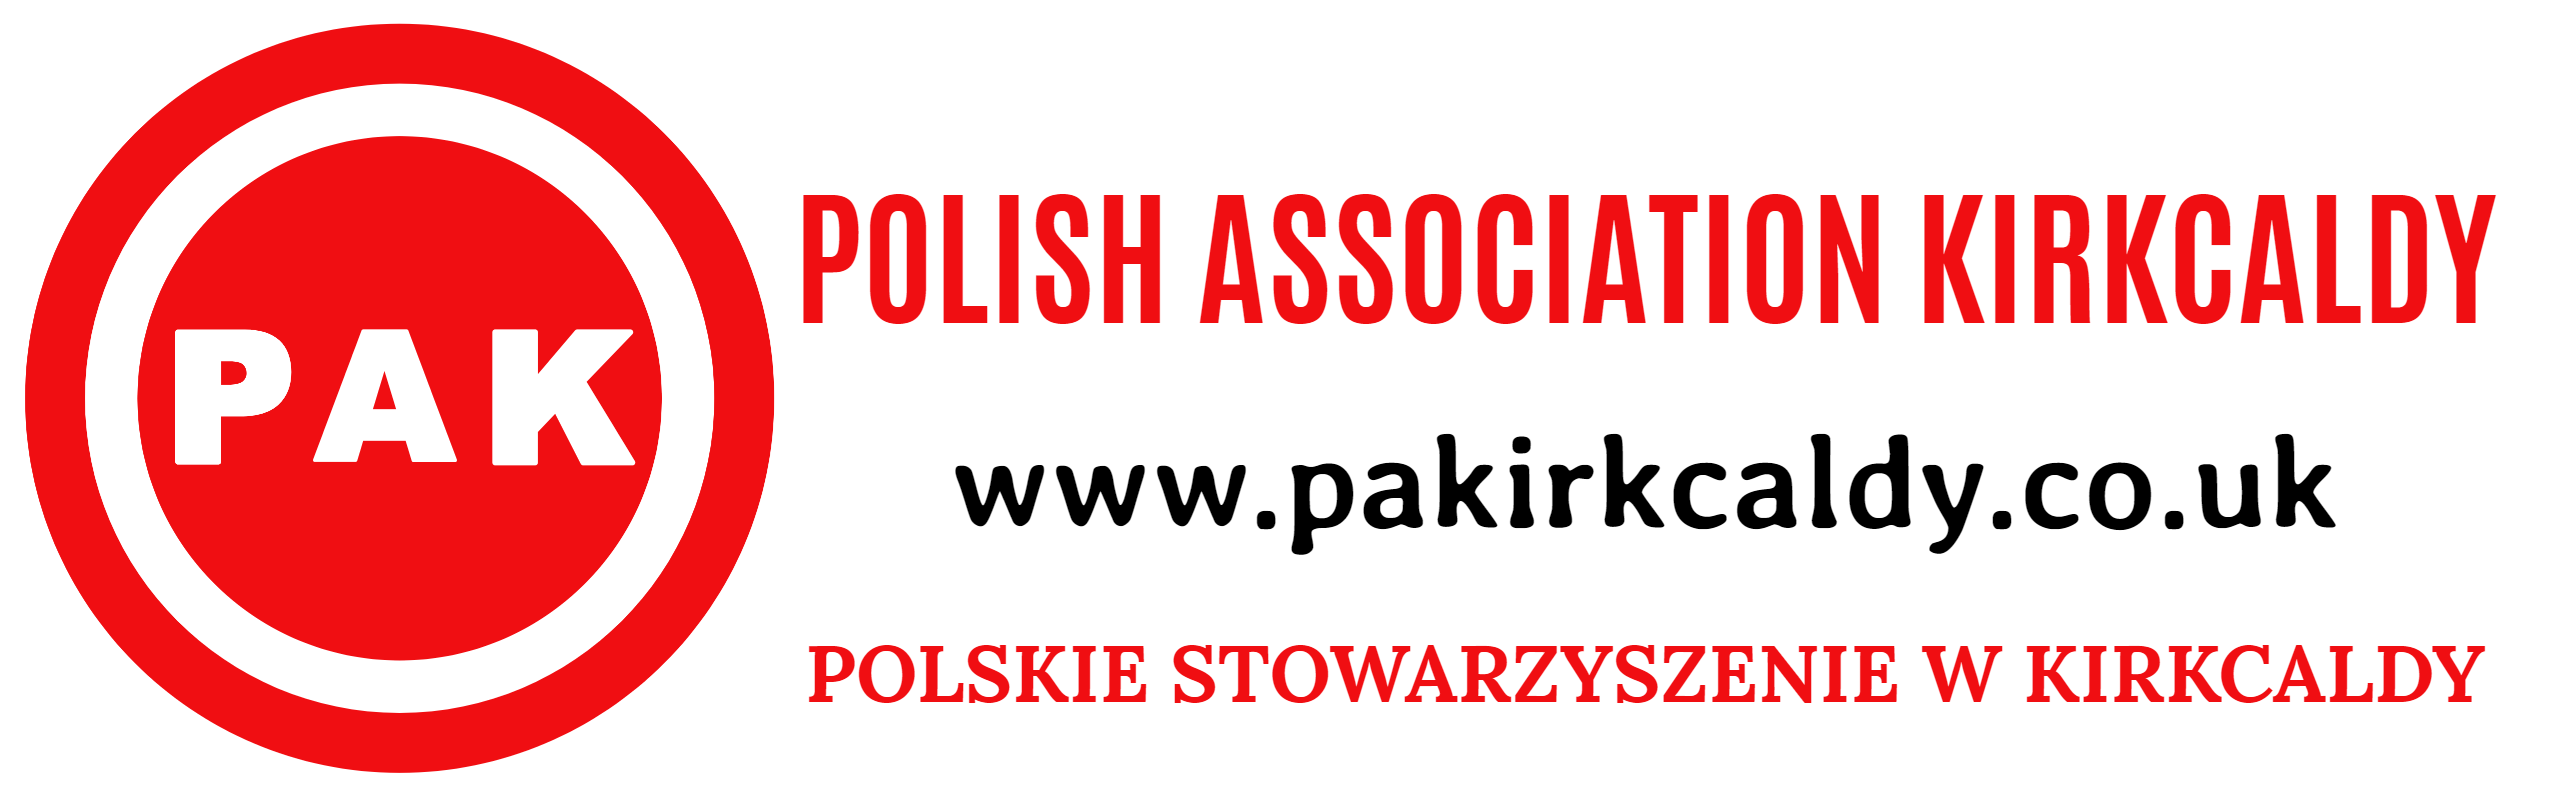 Polish Association Kirkcaldy - Polskie Stowarzyszenie w Kirkcaldy